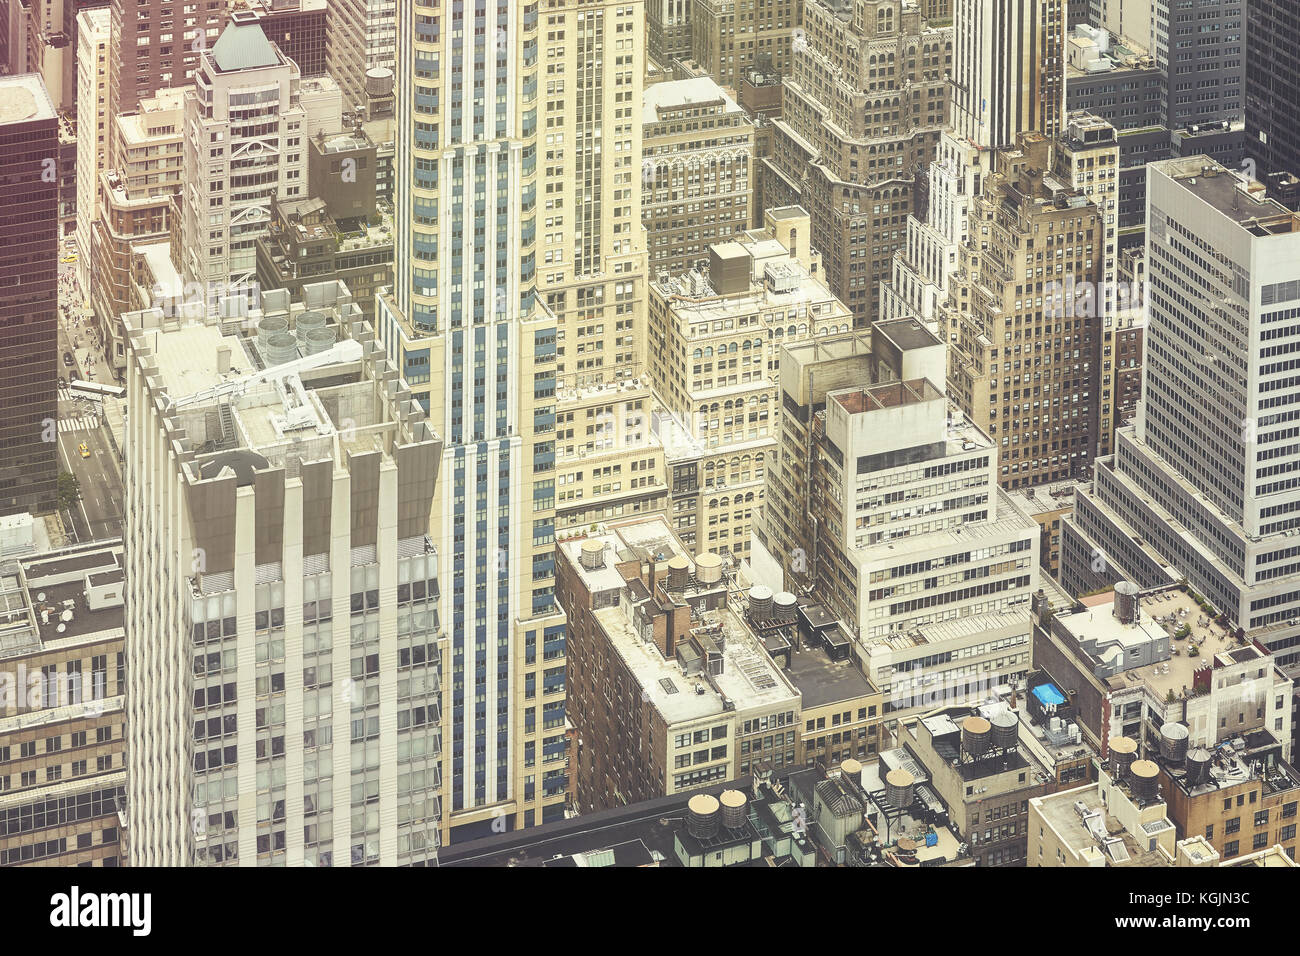 Retrò stilizzata fotografia aerea di New York City Manhattan, Stati Uniti d'America. Foto Stock